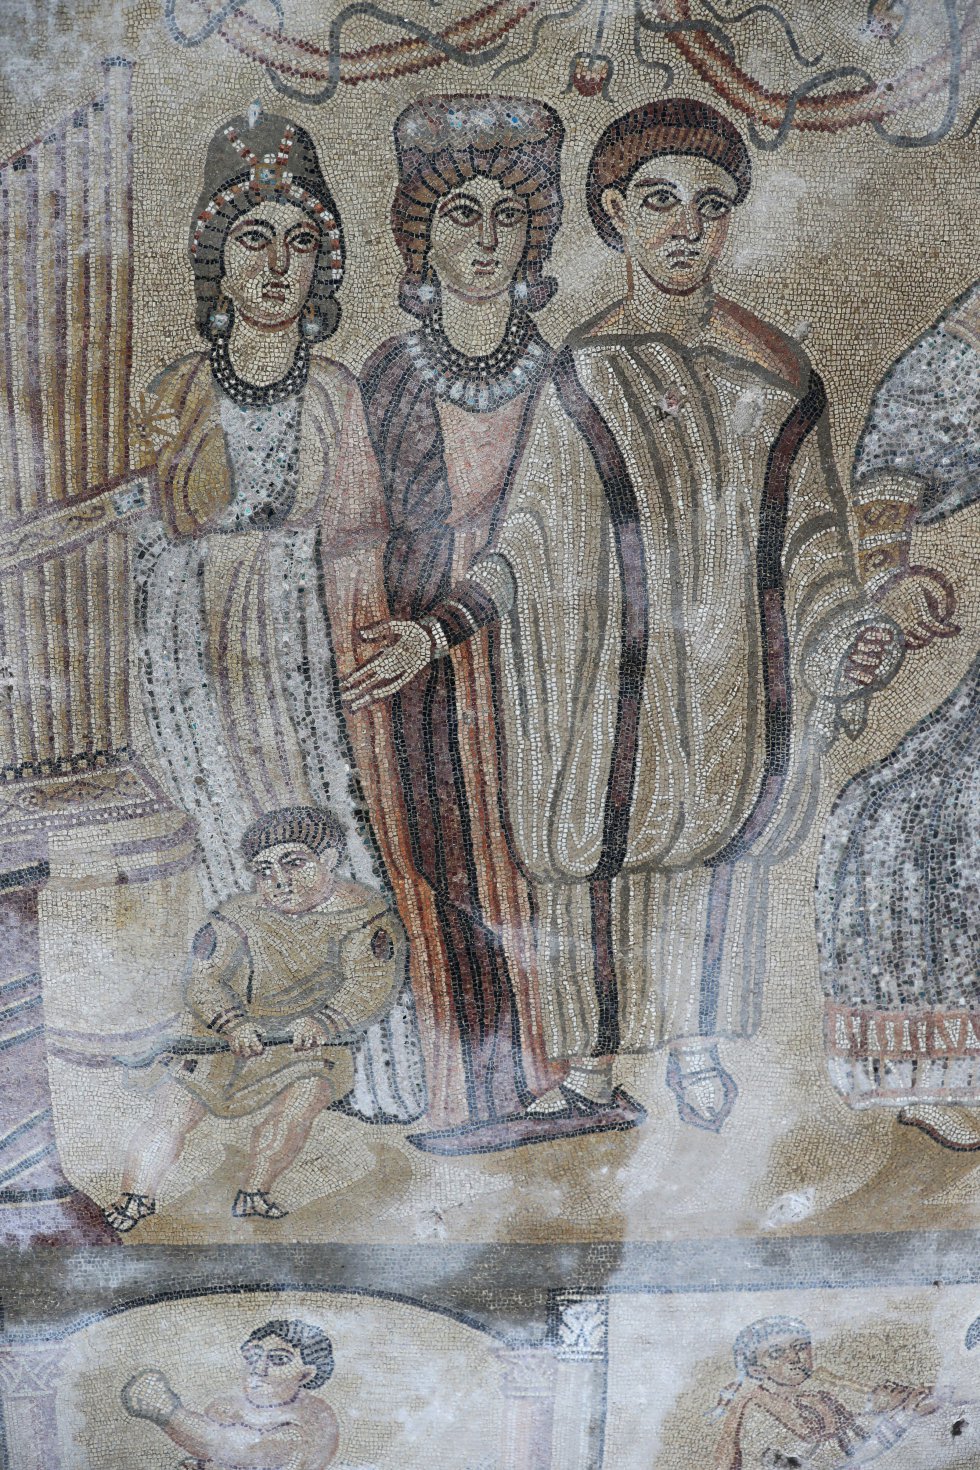 5Detalle de una de las dos pantomimas que fueron representadas en el mosaico. Uno de los personajes lleva un escarpín largo y sólido con el que marcaba los 'tempos' de la música. Es una de las escasas representaciones que existen en el mundo.